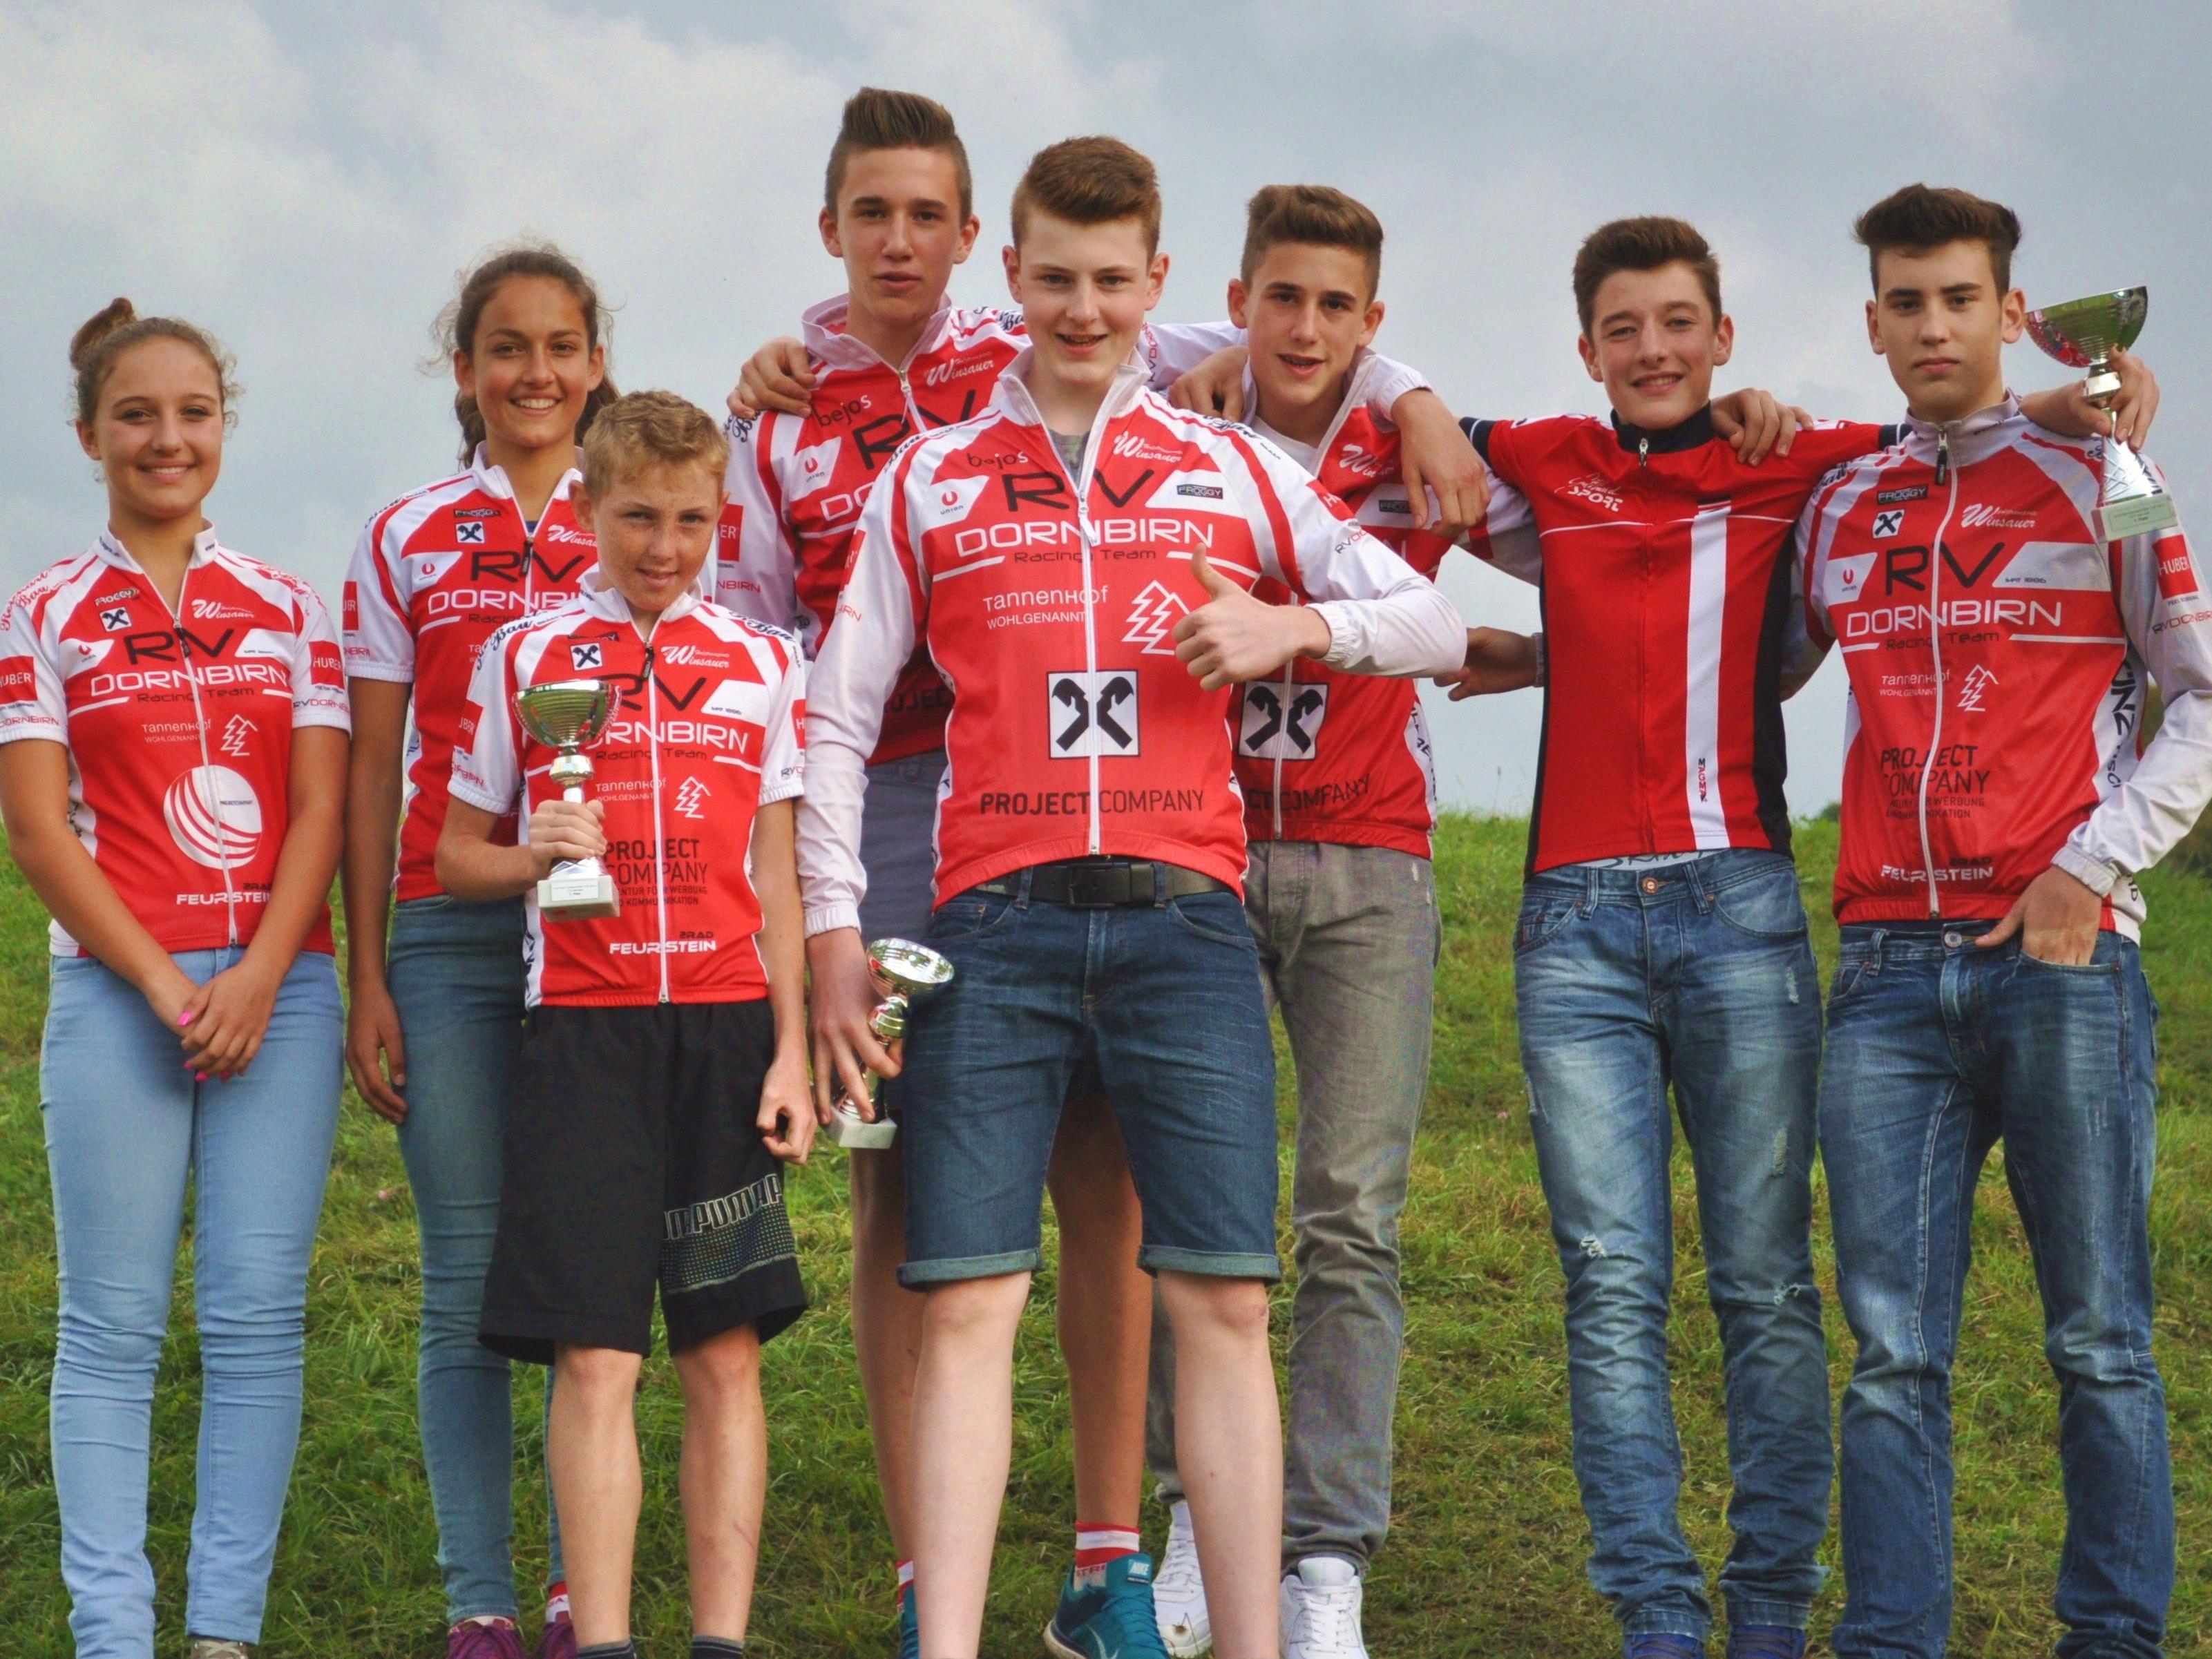 Die Nachwuchsfahrer vom RV Dornbirn sind zweitbestes Team Österreichs.